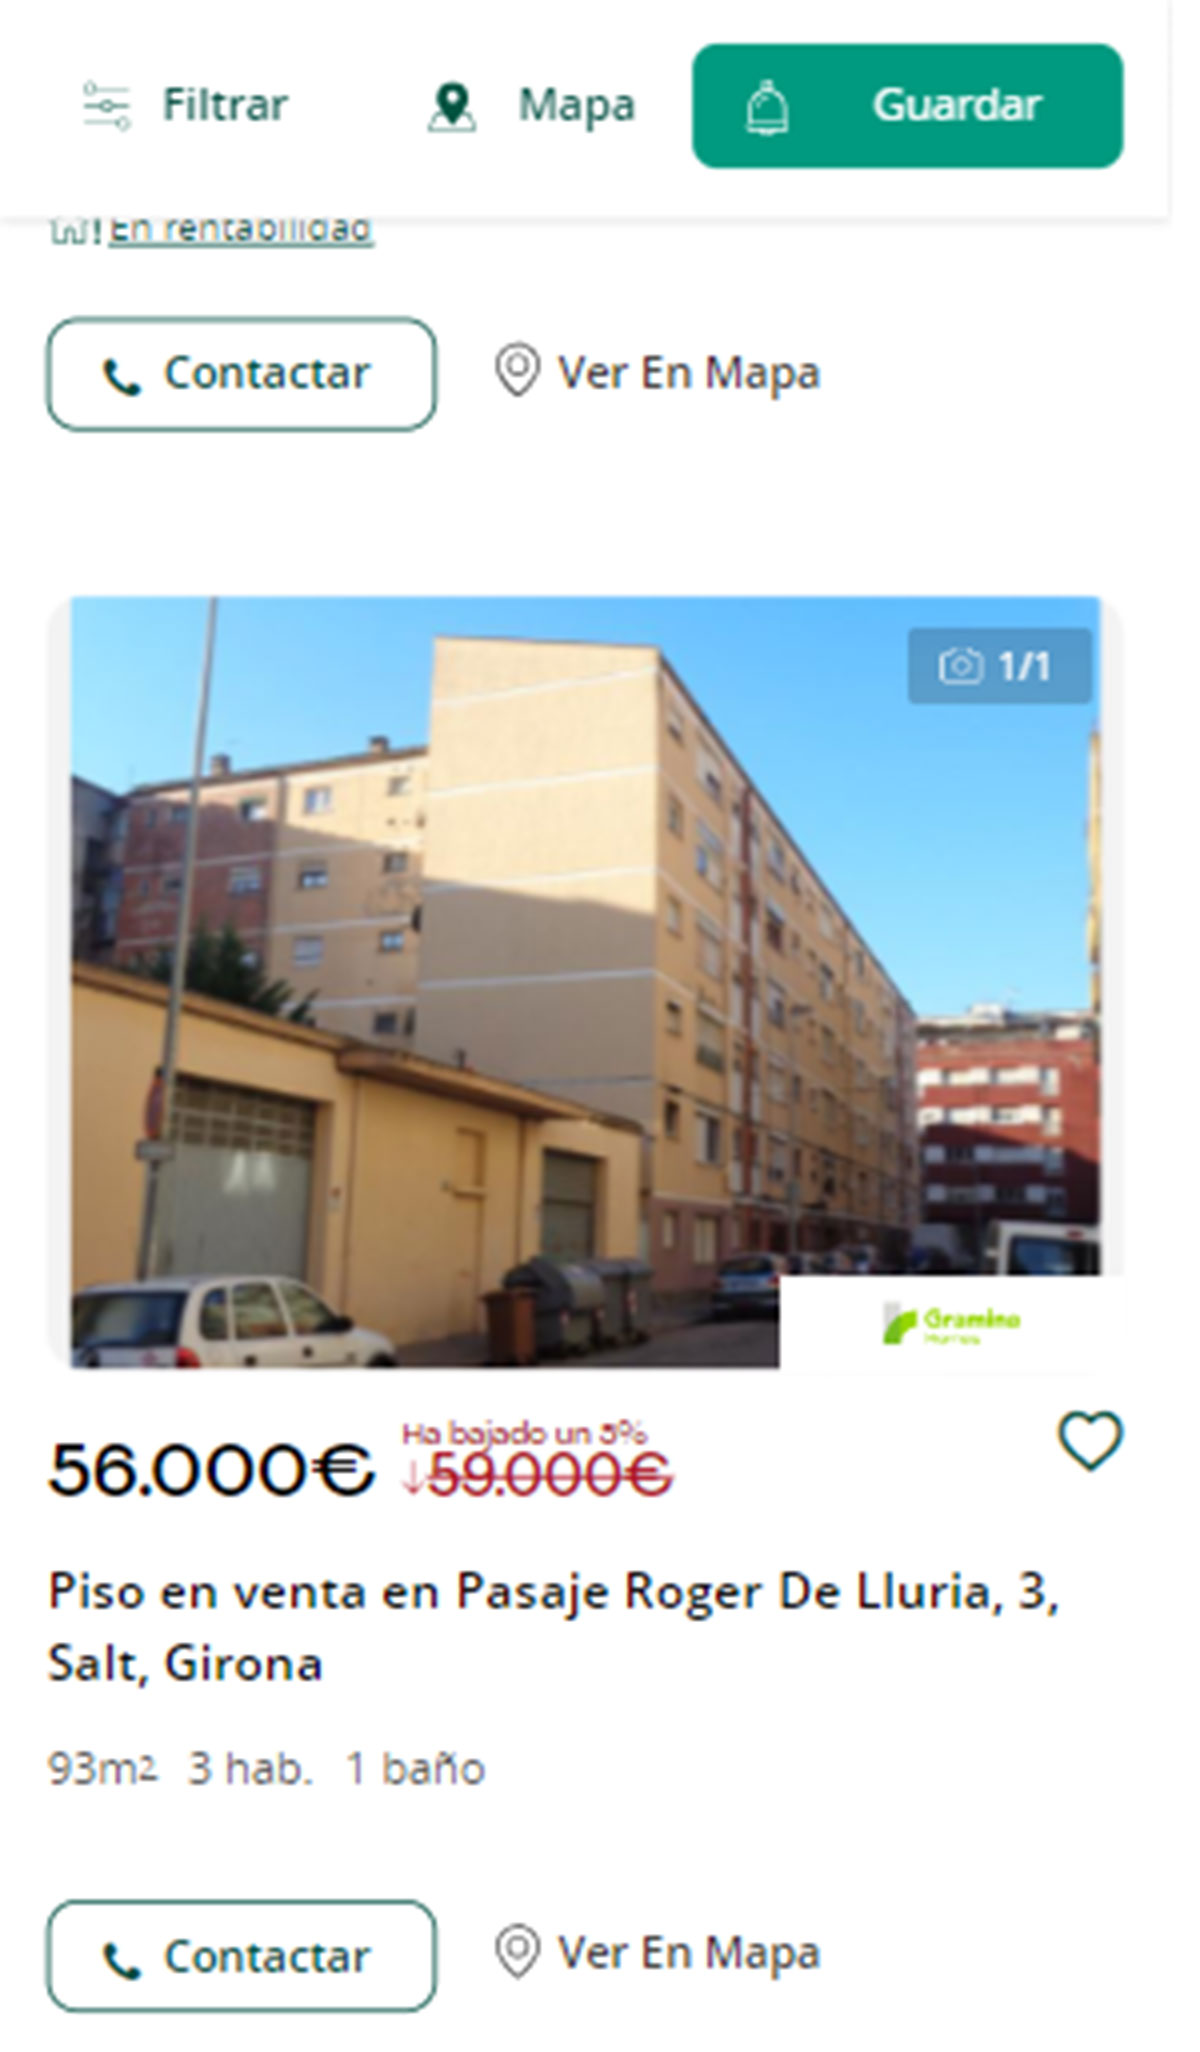 Piso en Girona por 56.000 euros